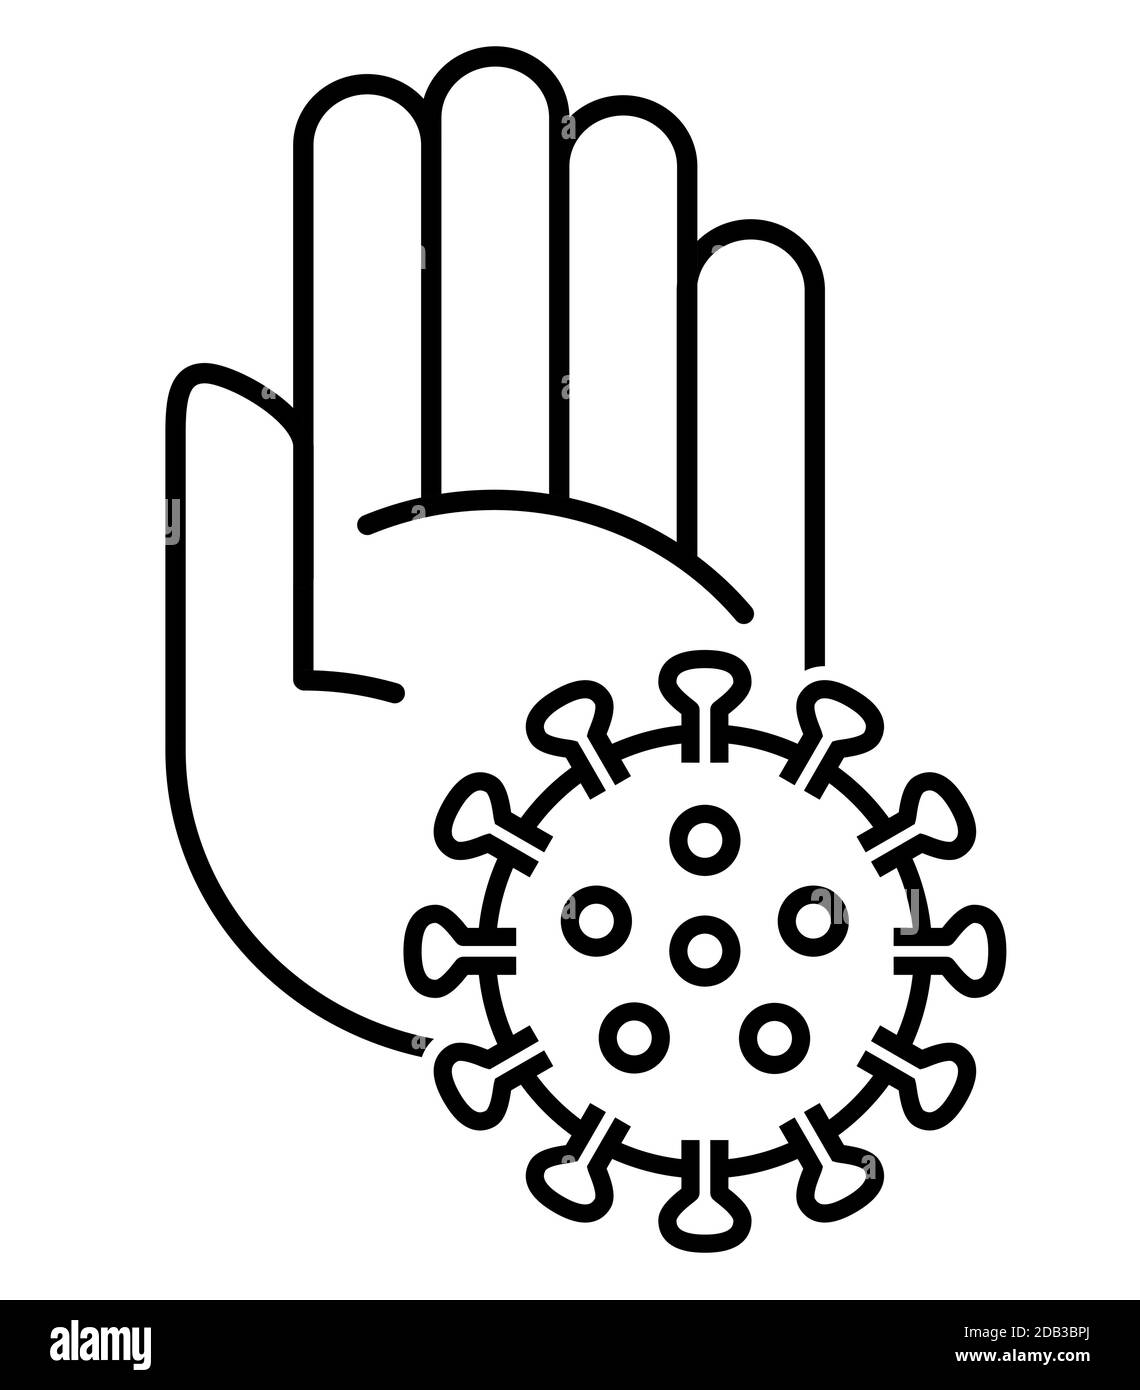 Icona della linea d'arte del simbolo di arresto del palmo della mano e del virus corona icona dell'illustrazione vettoriale per l'avviso di infezione Illustrazione Vettoriale